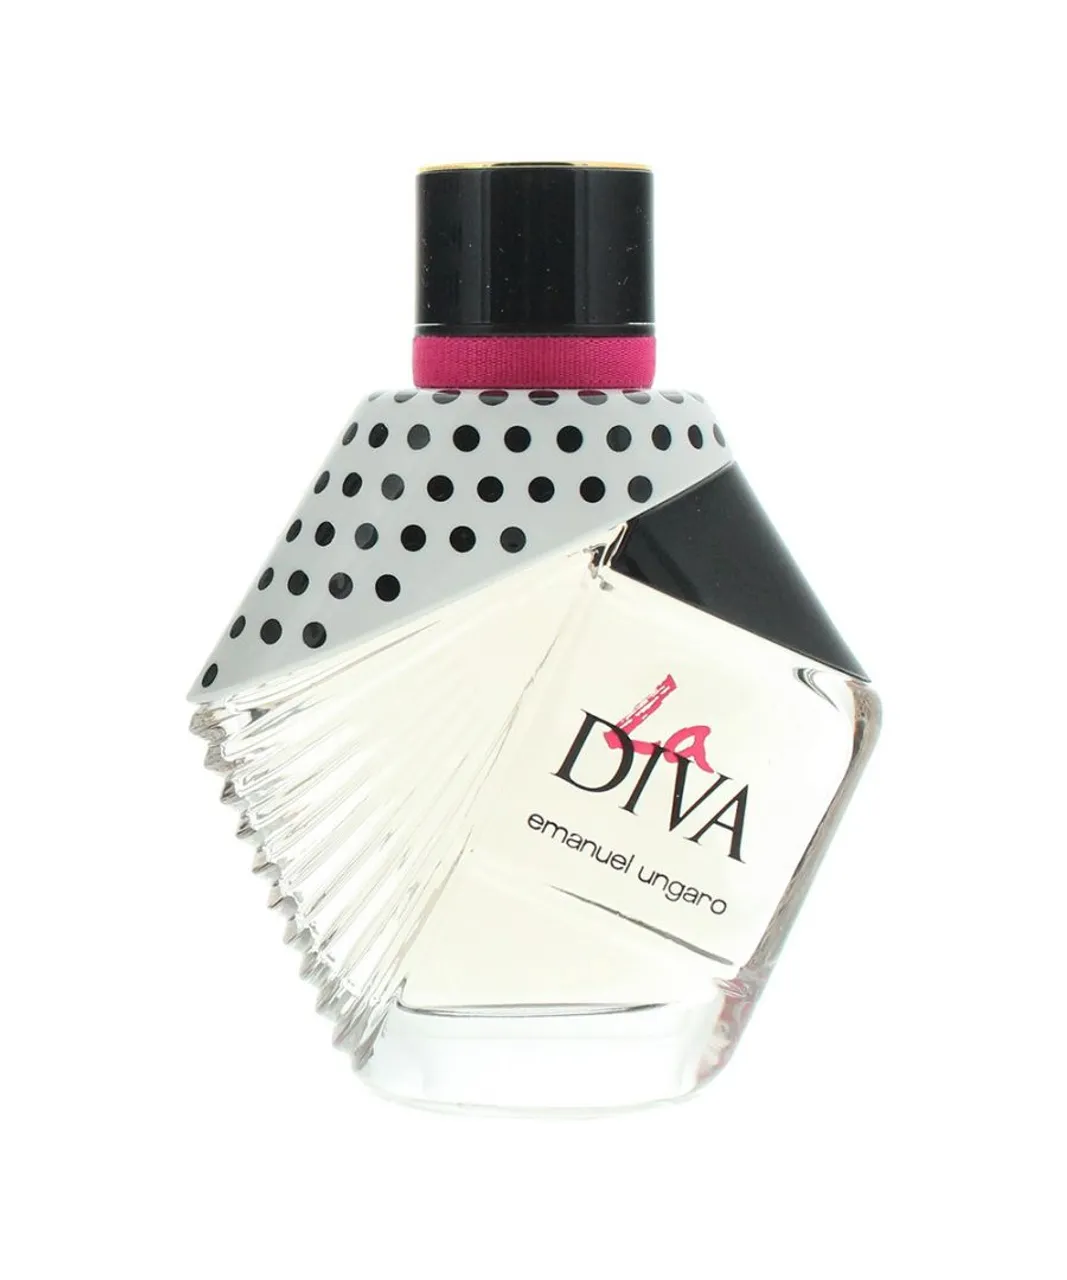 Emanuel Ungaro Womens La Diva Mon Amour Eau de Parfum 50ml Spray - Black - One Size